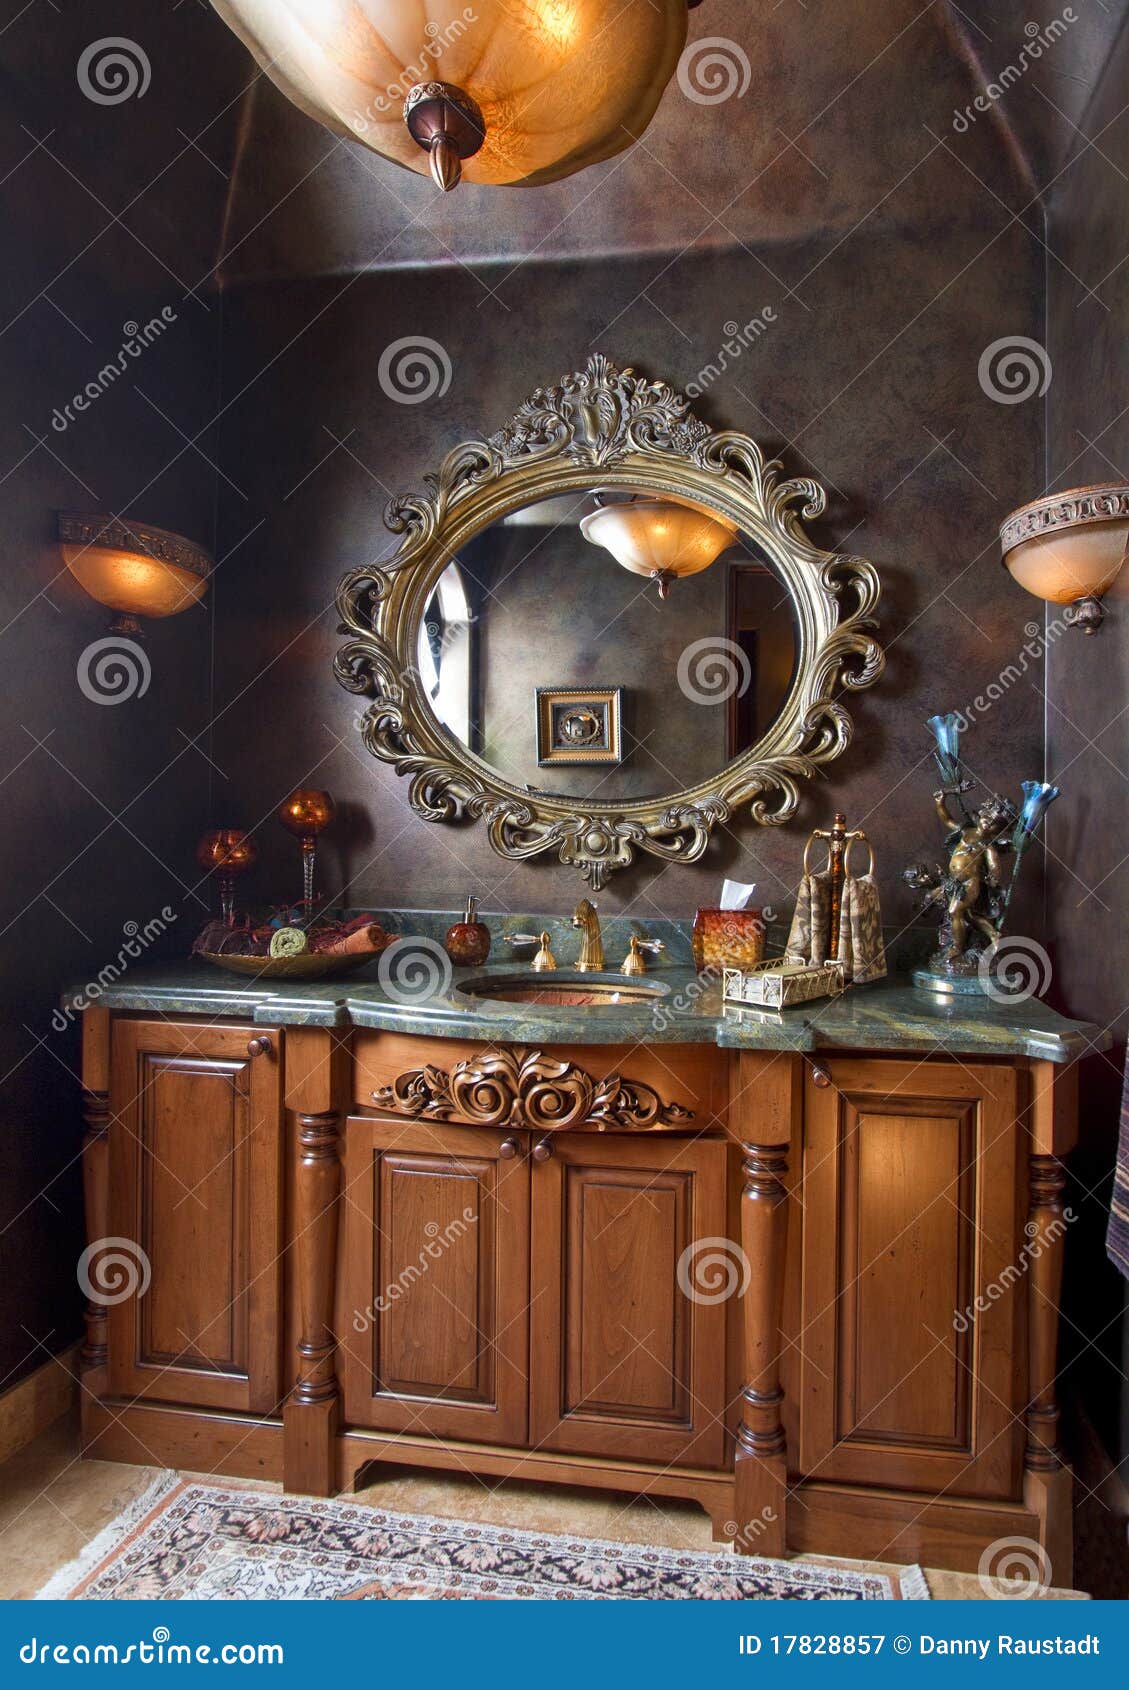 Elegant Bathroom Sink Counter Top Stock Image Image Of Indoor